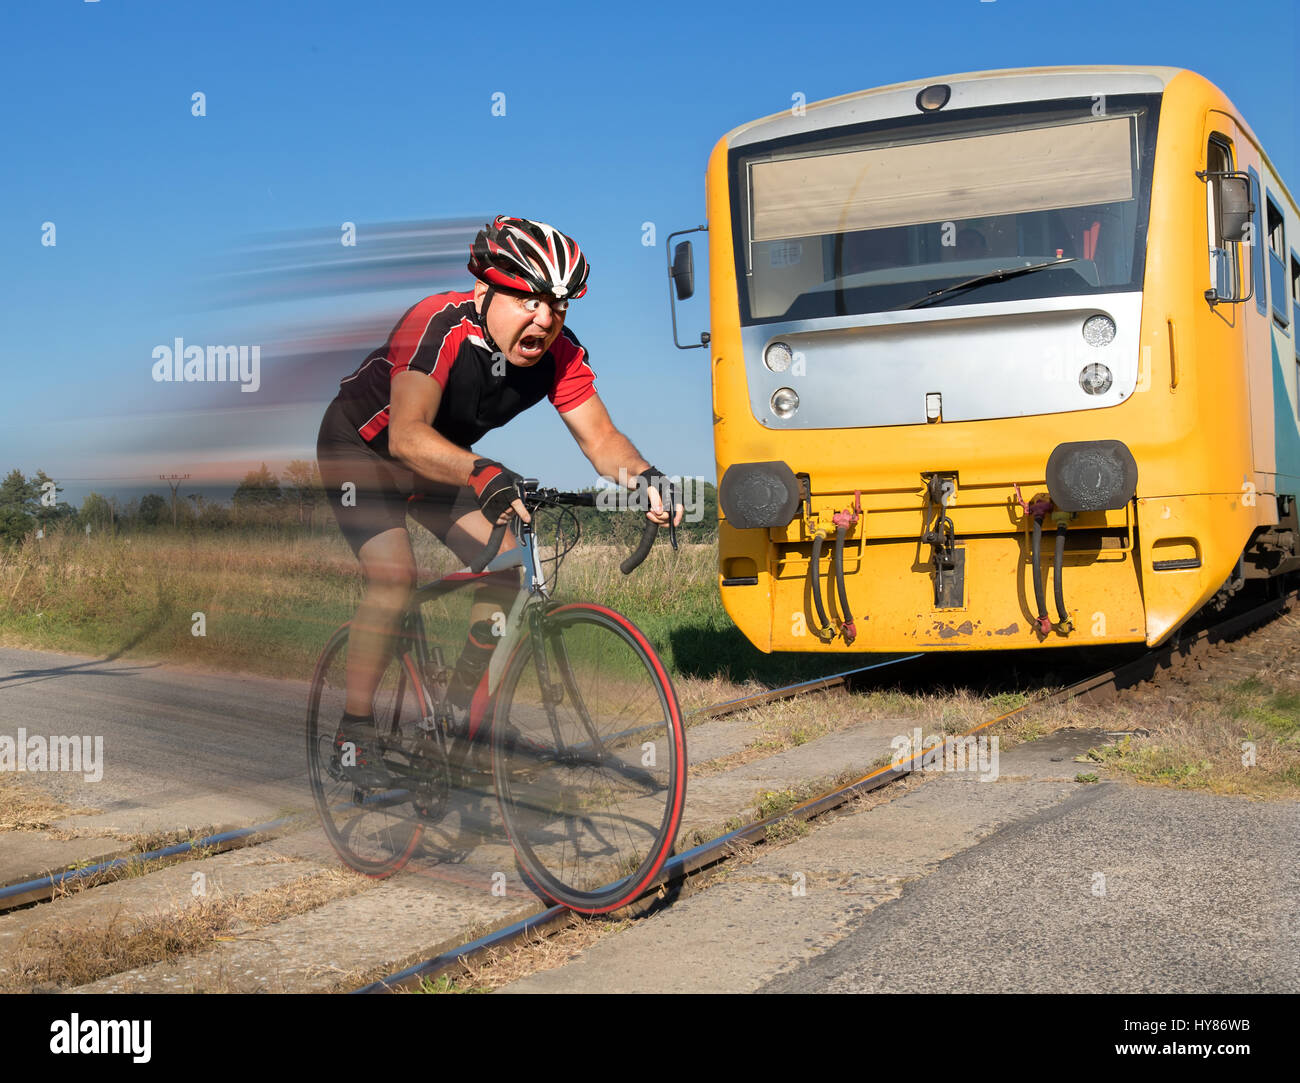 Cycliste est terrifié par le train avant de se précipiter sur les voies. Choqué biker ride un passage à niveau à l'avant d'un train qui approche. Banque D'Images